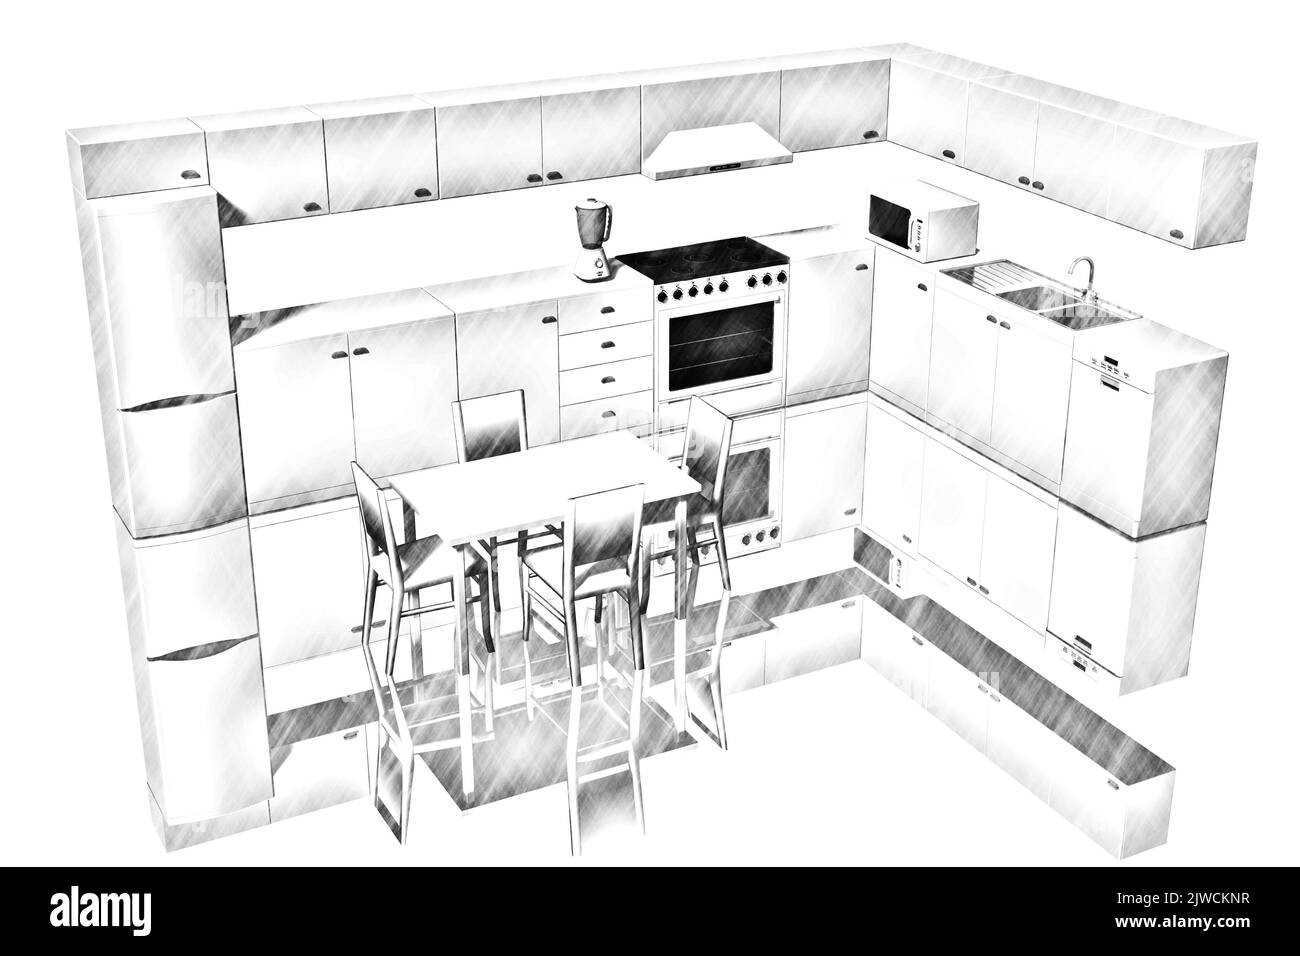 Illustrazione 3D. Cucina modulare completa di elettrodomestici. Foto Stock